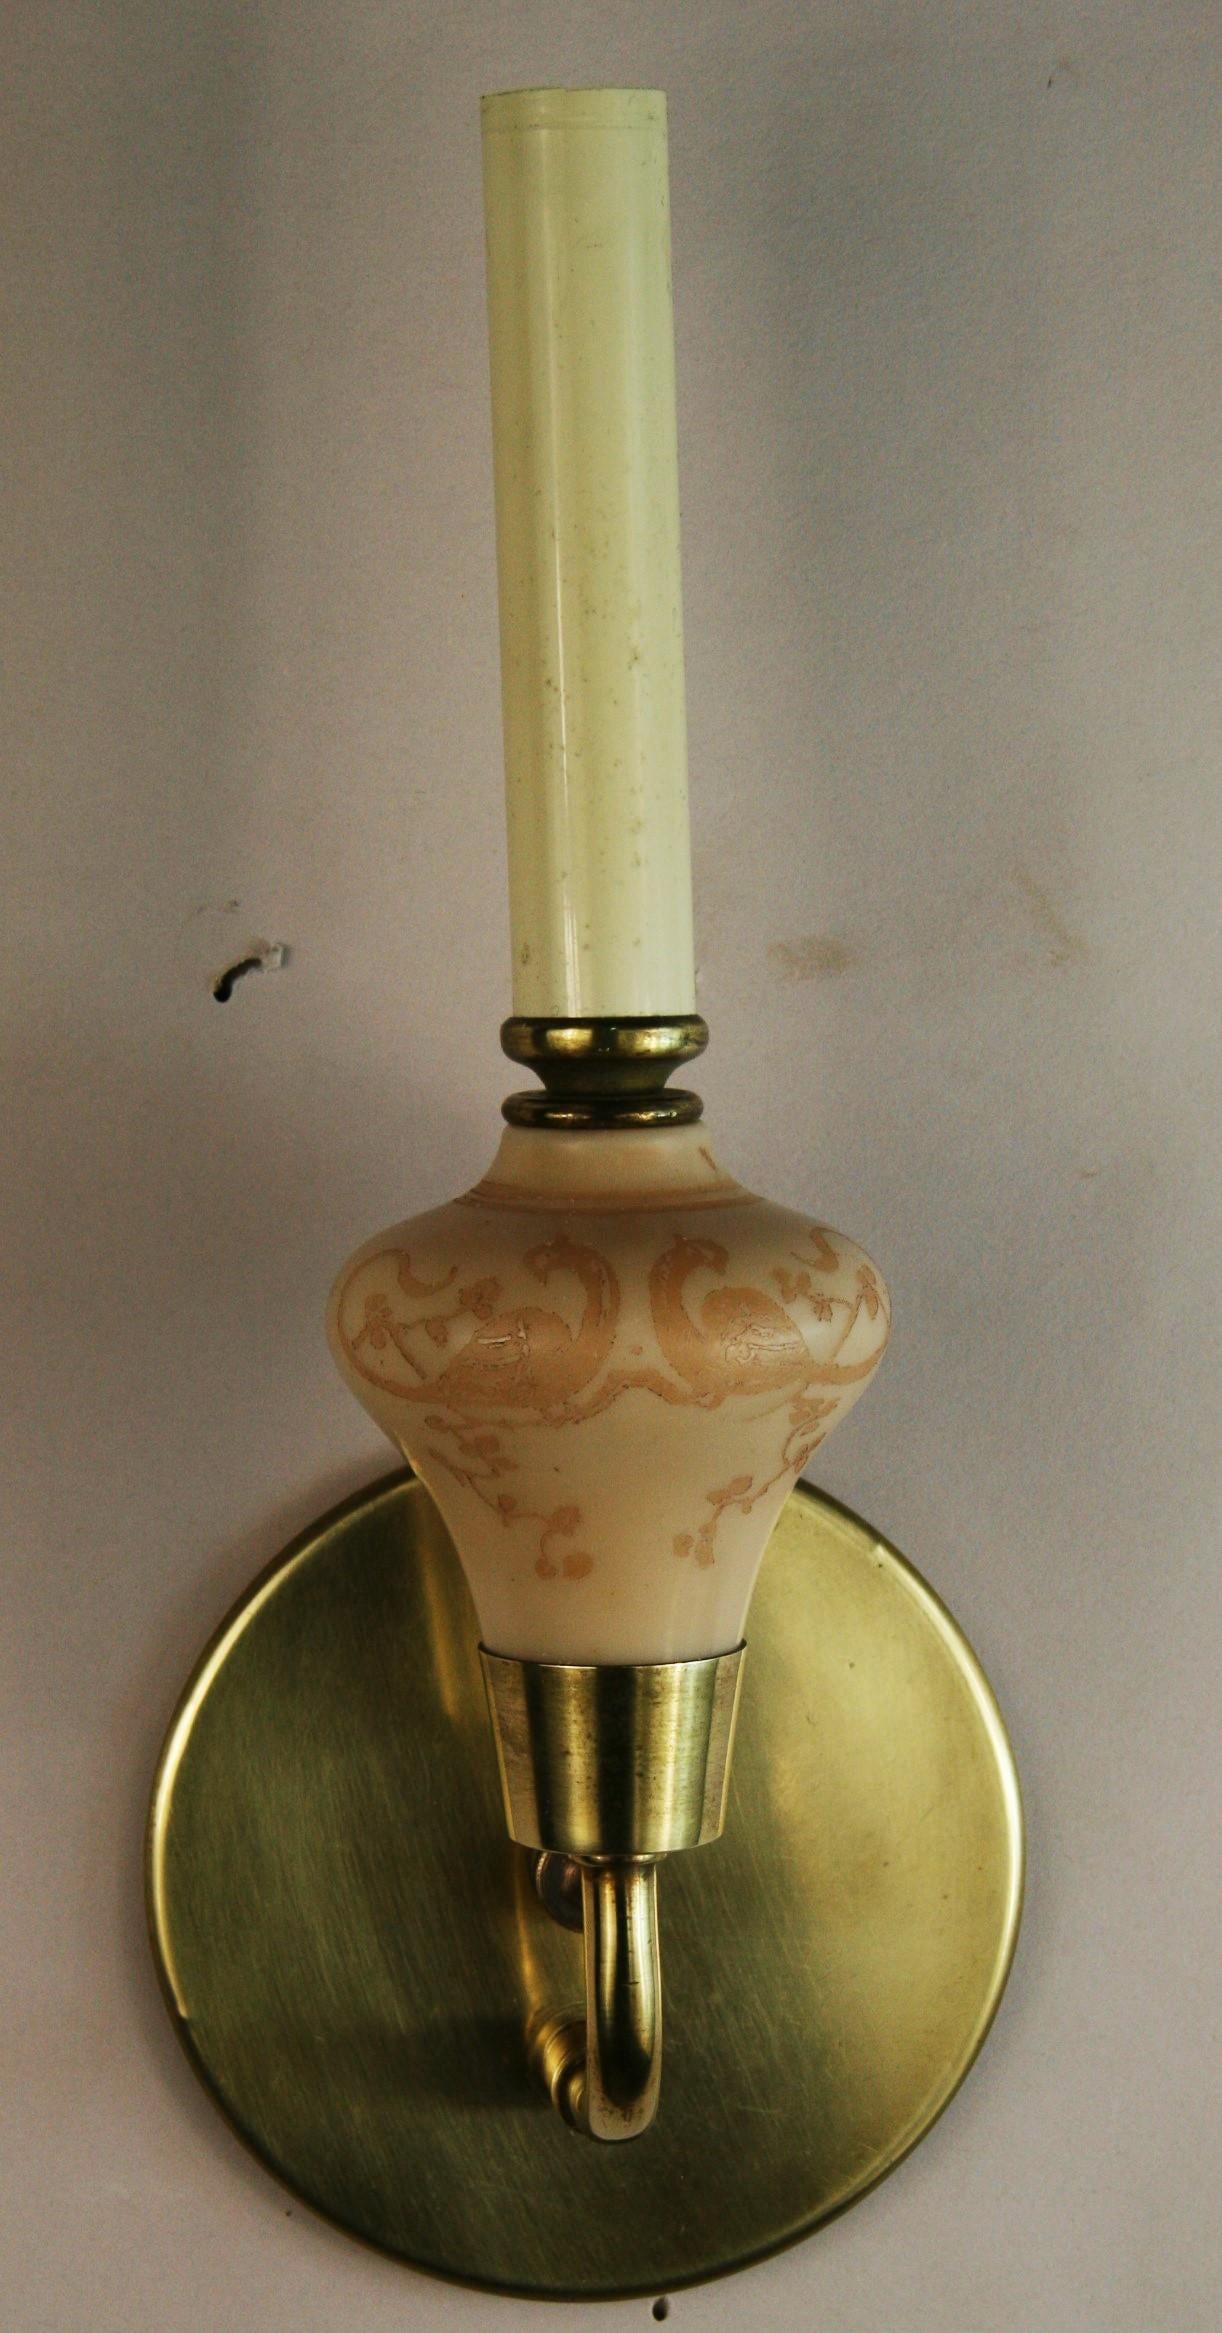 1586  Ein Paar französische Daum-Leuchter aus geätztem Glas und Messing
Geätzte Vögel und blattförmige Details
Für eine 60-Watt-Glühbirne mit Kandelabersockel geeignet
Neu verkabelt.